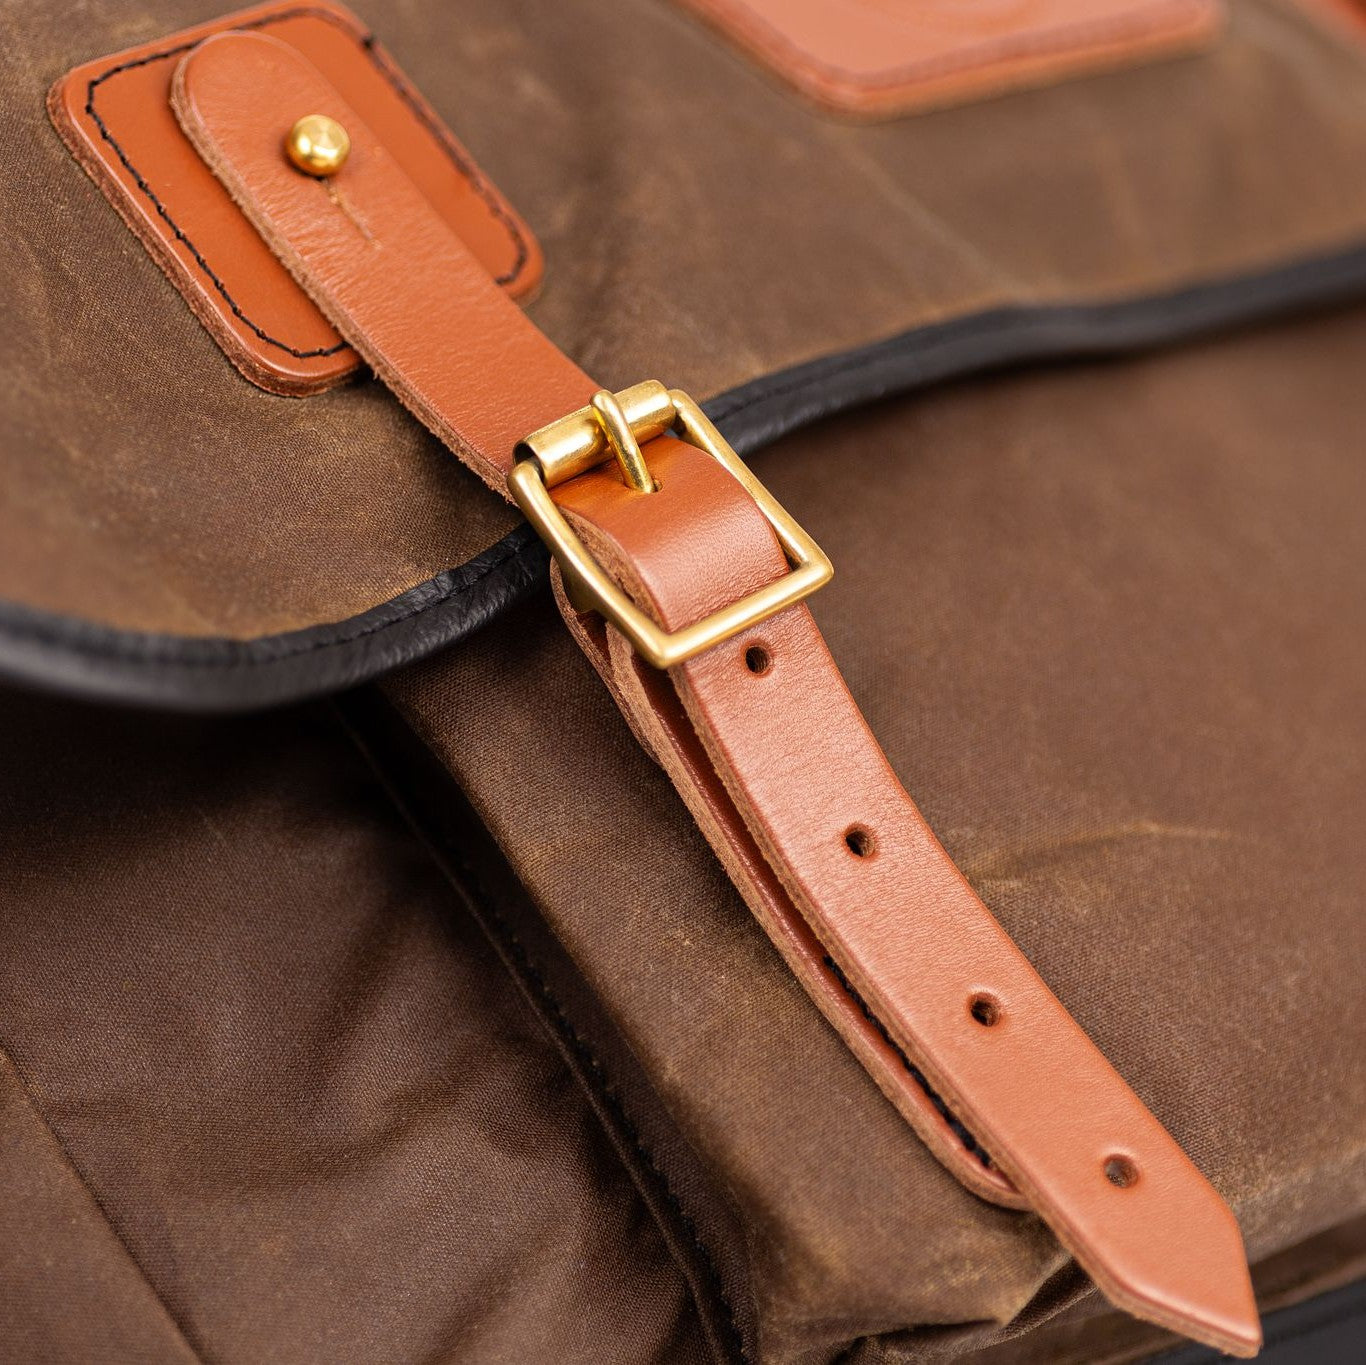 Gubbins messenger bag leather strap detail